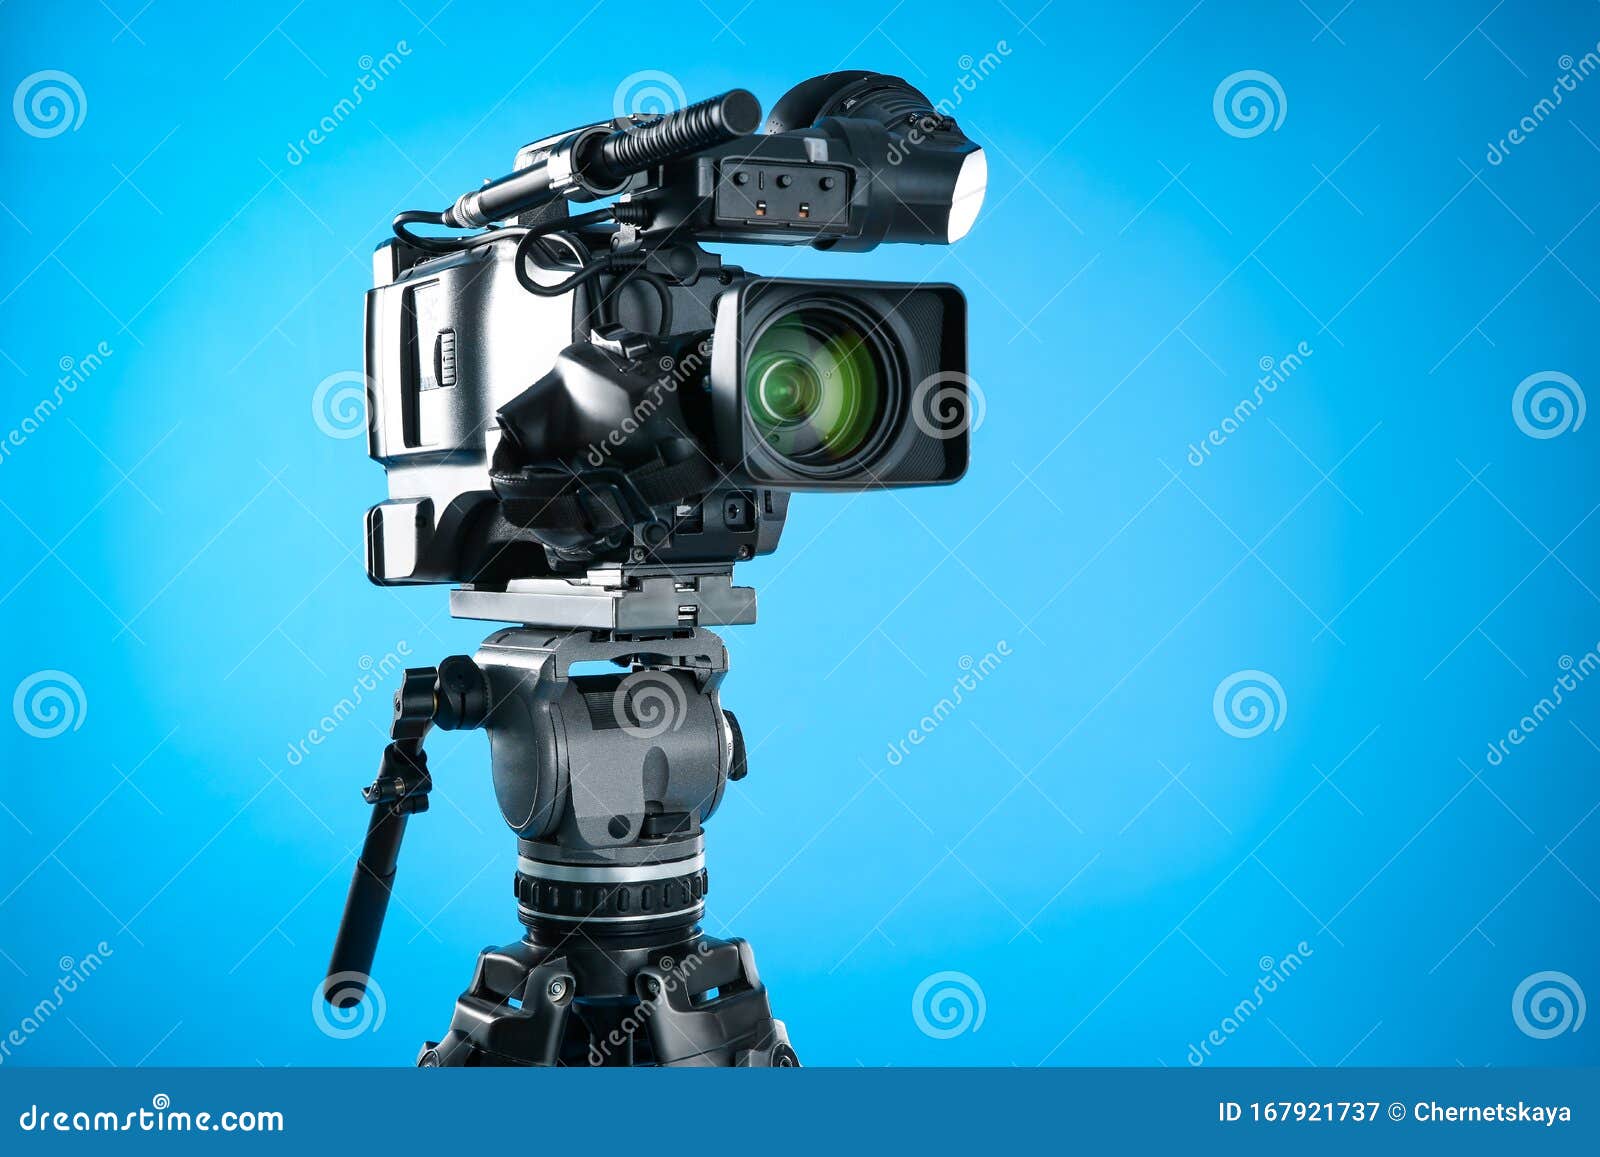 Máy quay phim chuyên nghiệp: Với máy quay phim chuyên nghiệp, bạn sẽ nâng cao tuyệt đối khả năng quay phim của mình. Sản phẩm final của bạn sẽ trở nên chuyên nghiệp và đẳng cấp hơn khi sử dụng máy quay phim chuyên nghiệp. Bạn sẽ cảm nhận được sự khác biệt với các tác phẩm của mình và dần khẳng định được bản thân trong lĩnh vực quay phim.